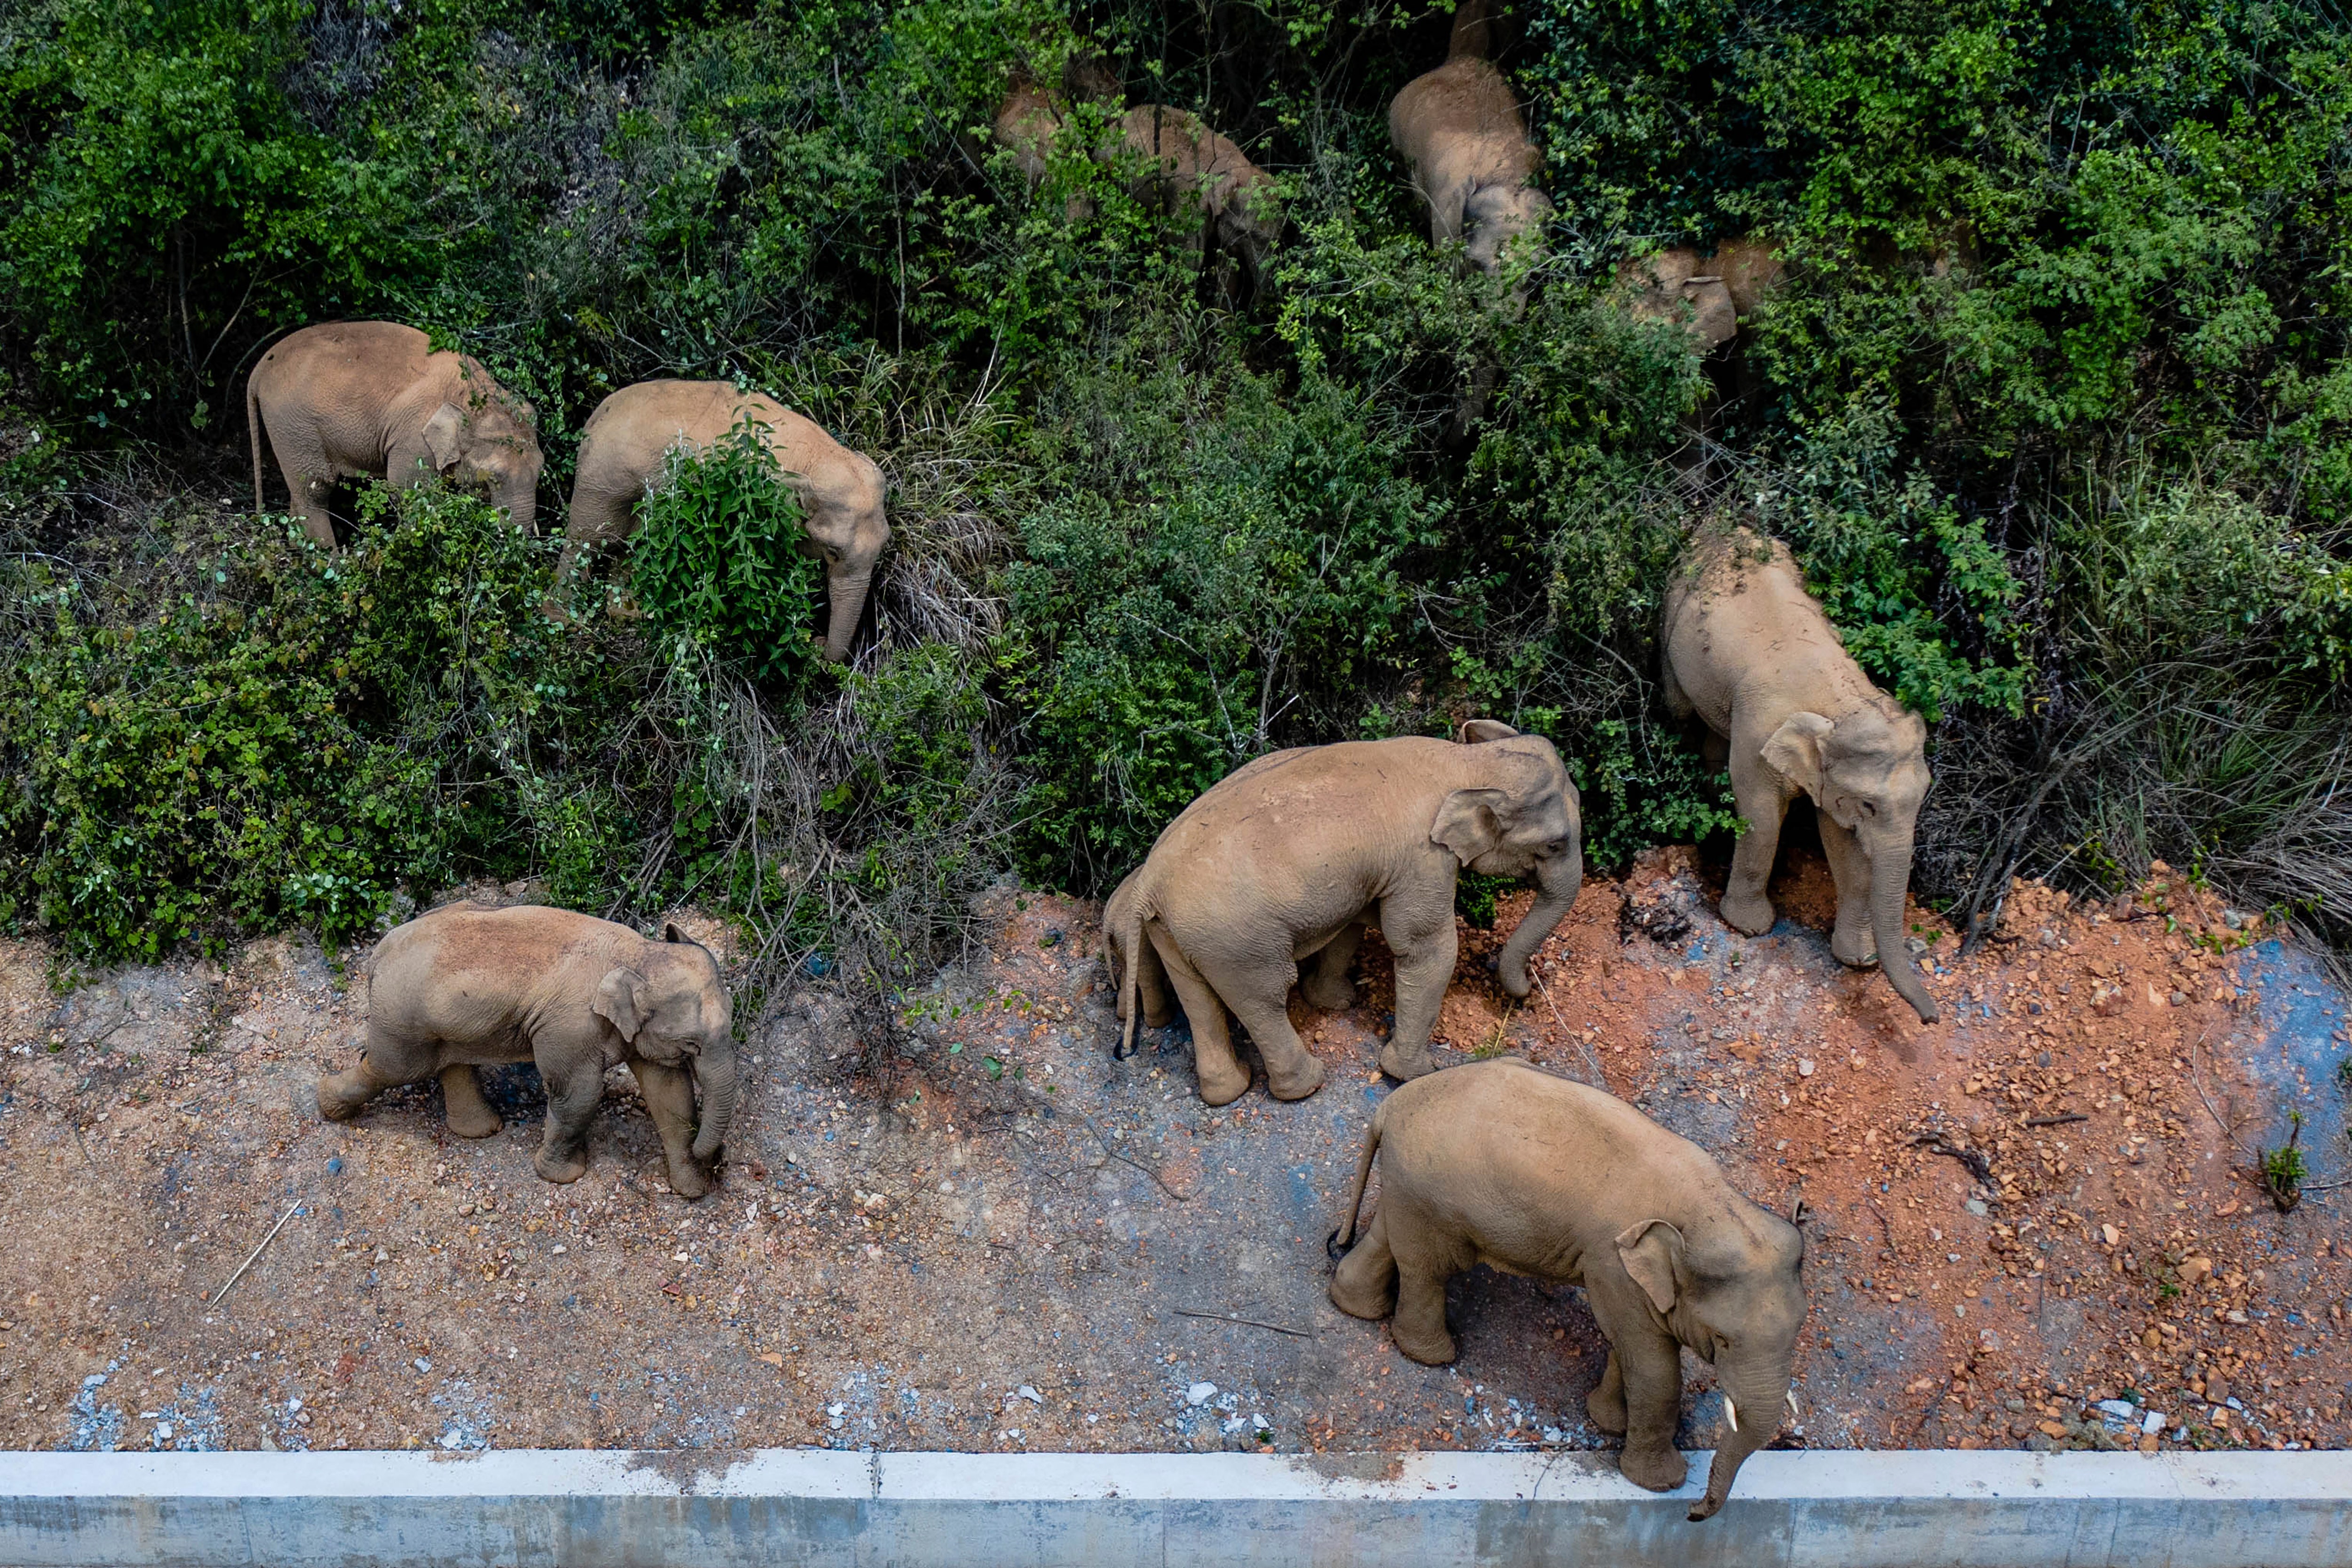 Trung Quốc đang cố gắng ngăn đàn voi ra khỏi thành phố 7 triệu dân